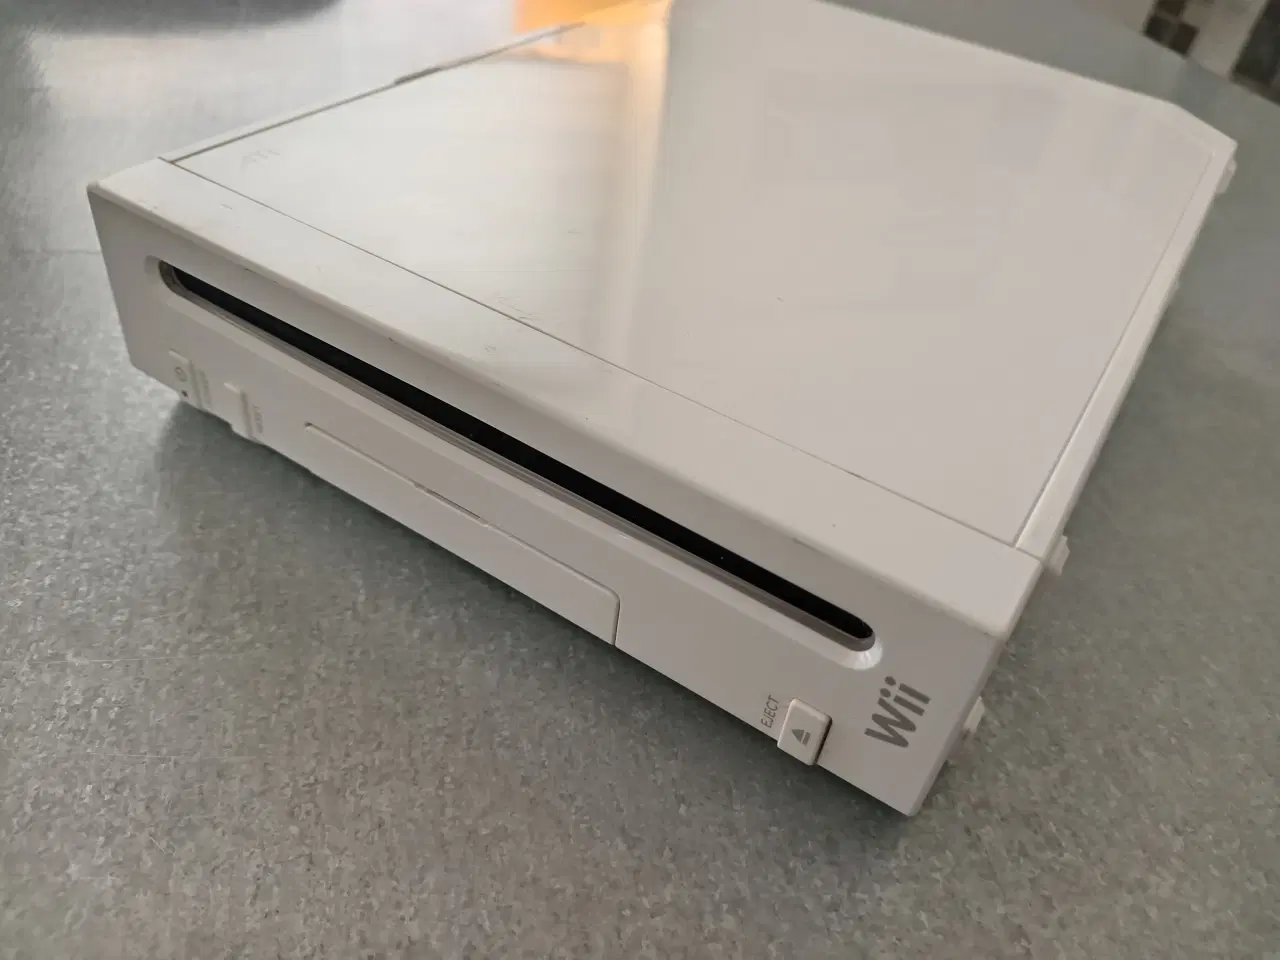 Billede 1 - Wii konsol i hvid